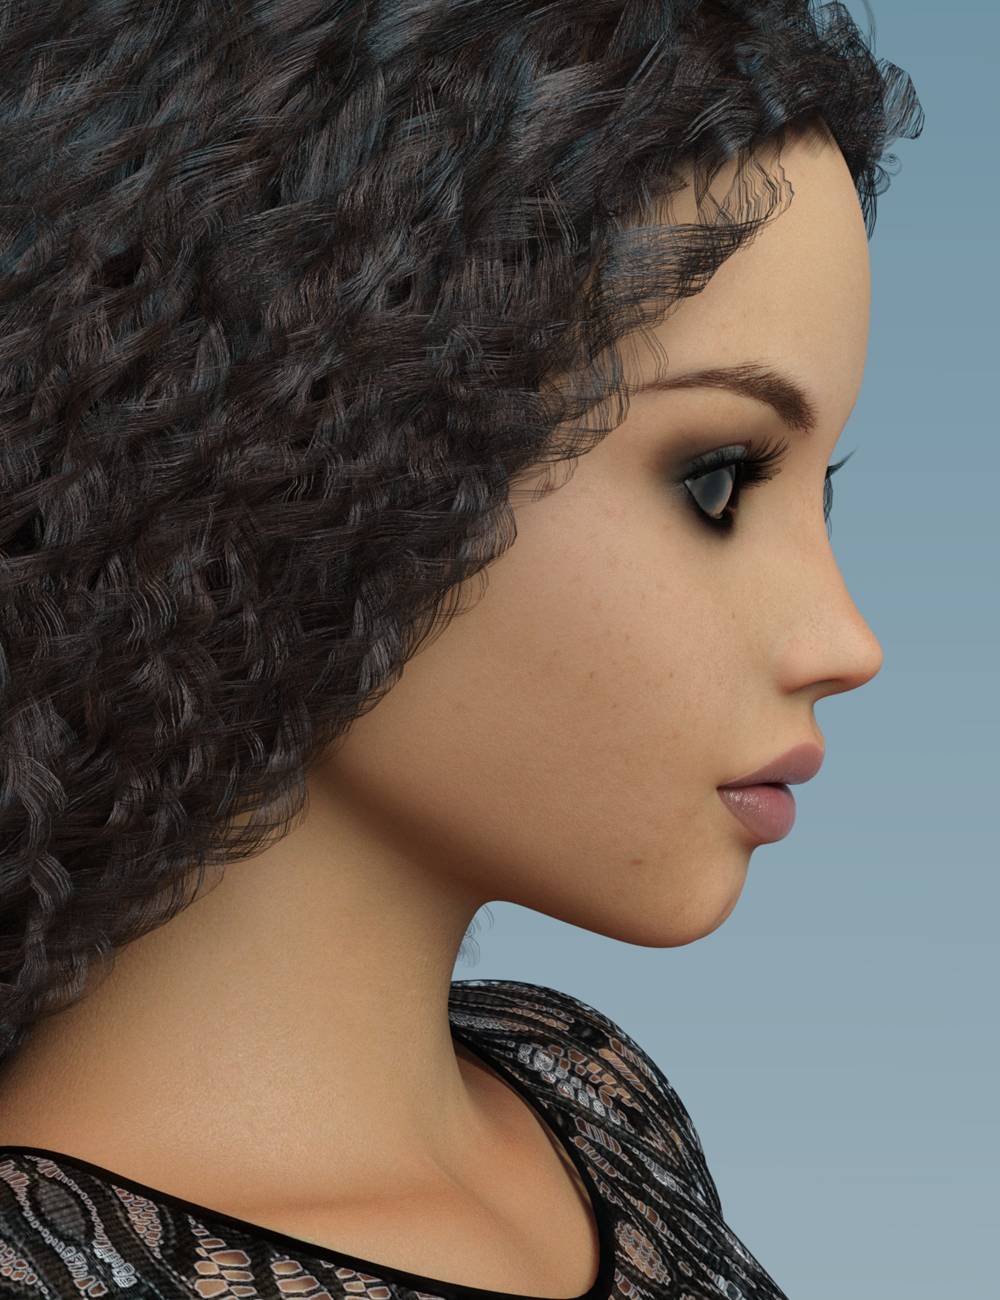 FWSA Bex HD for Teen Josie 8 by: Fred Winkler ArtSabby, 3D Models by Daz 3D